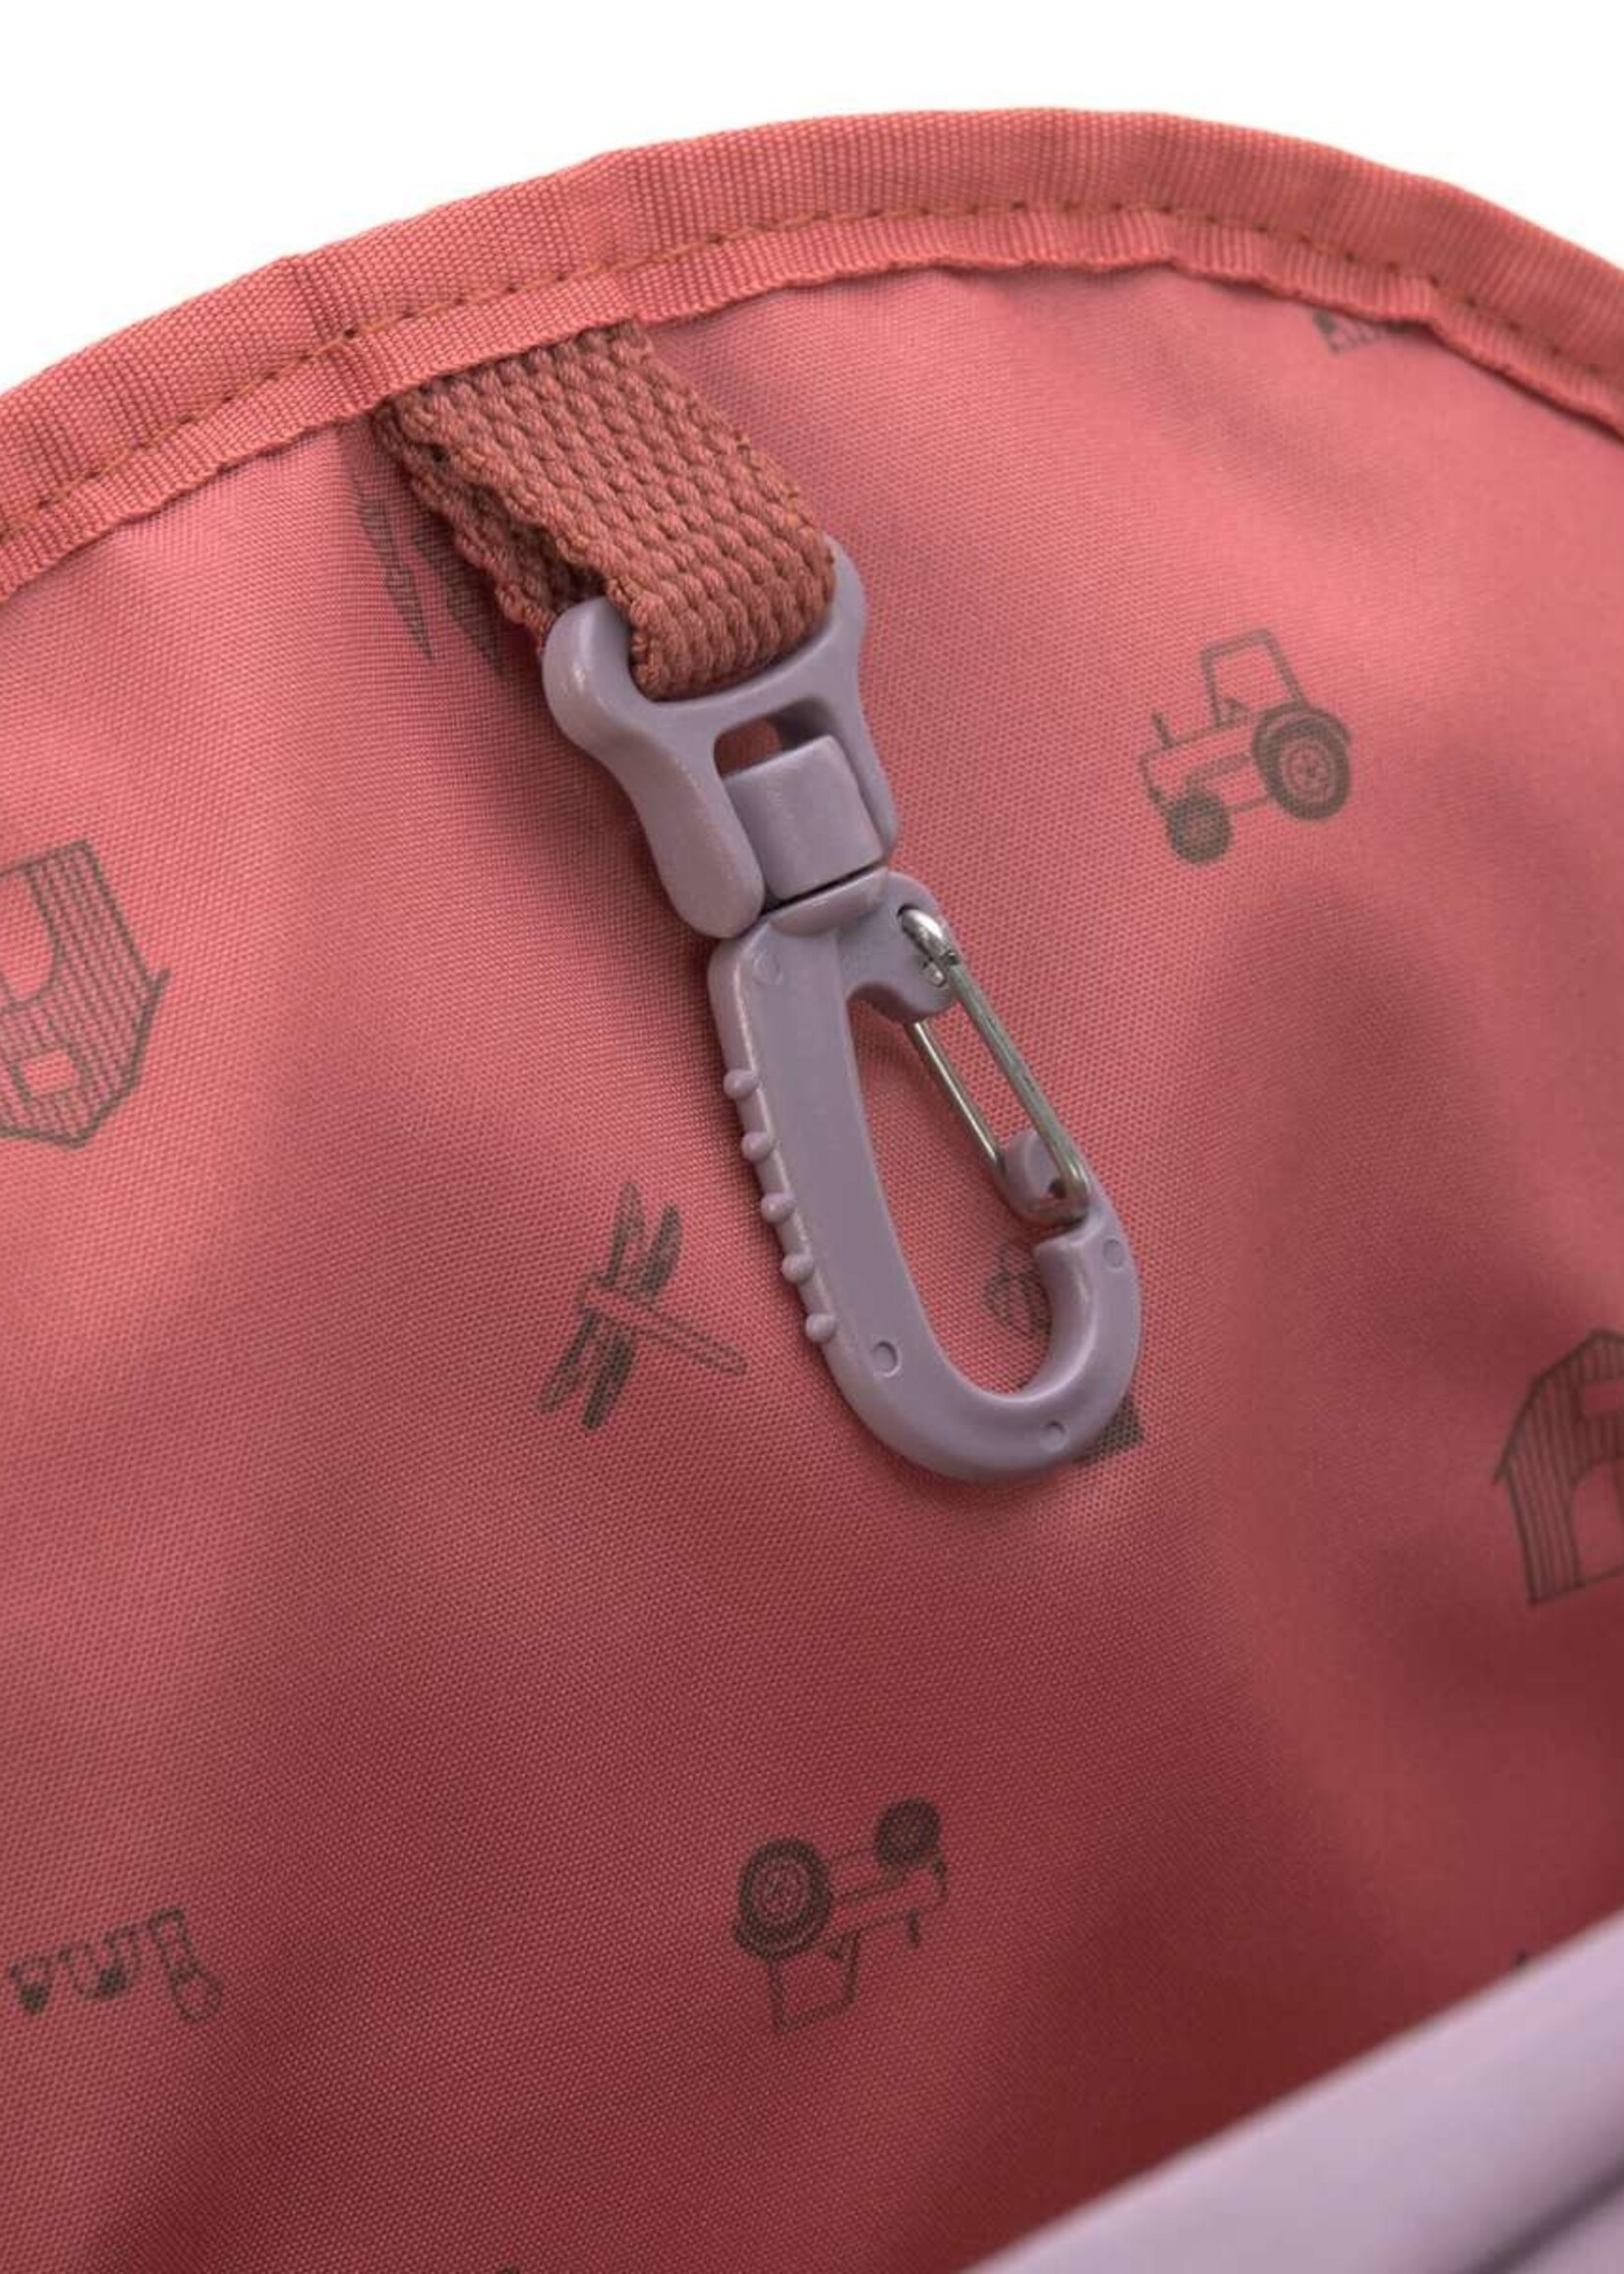 Lässig Fashion Kindergartenrucksack - Mini Backpack, Adventure Libelle